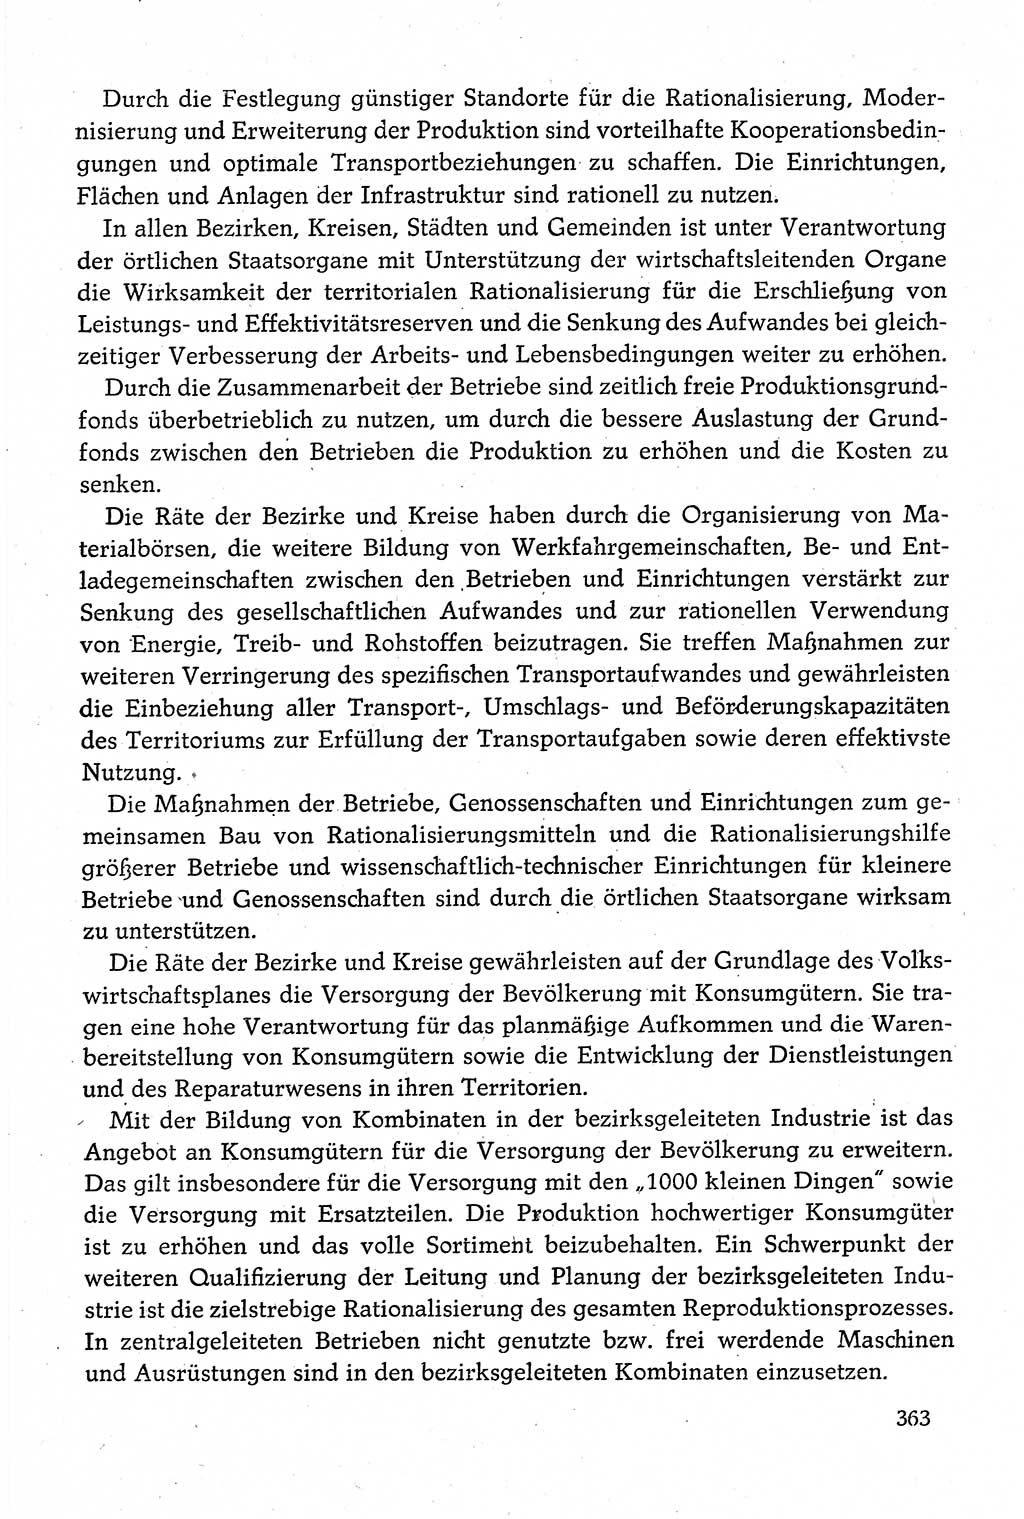 Dokumente der Sozialistischen Einheitspartei Deutschlands (SED) [Deutsche Demokratische Republik (DDR)] 1980-1981, Seite 363 (Dok. SED DDR 1980-1981, S. 363)